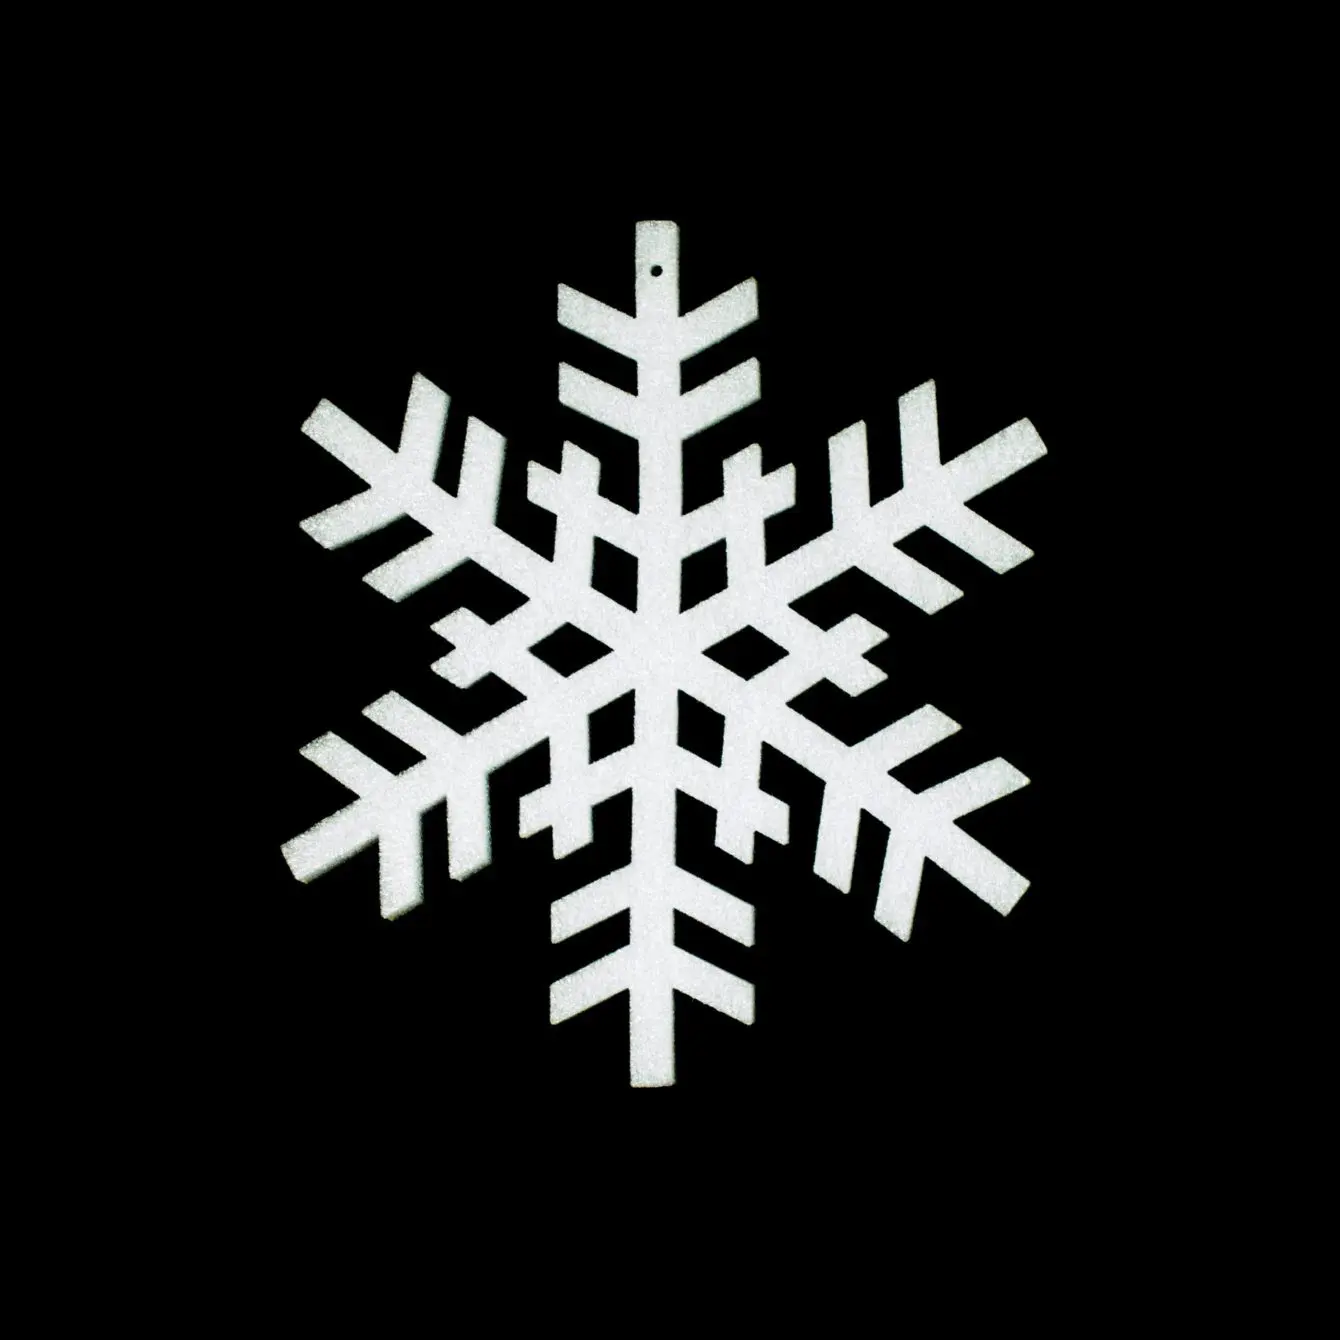 Polyethylene Snowflakes - Acme FX